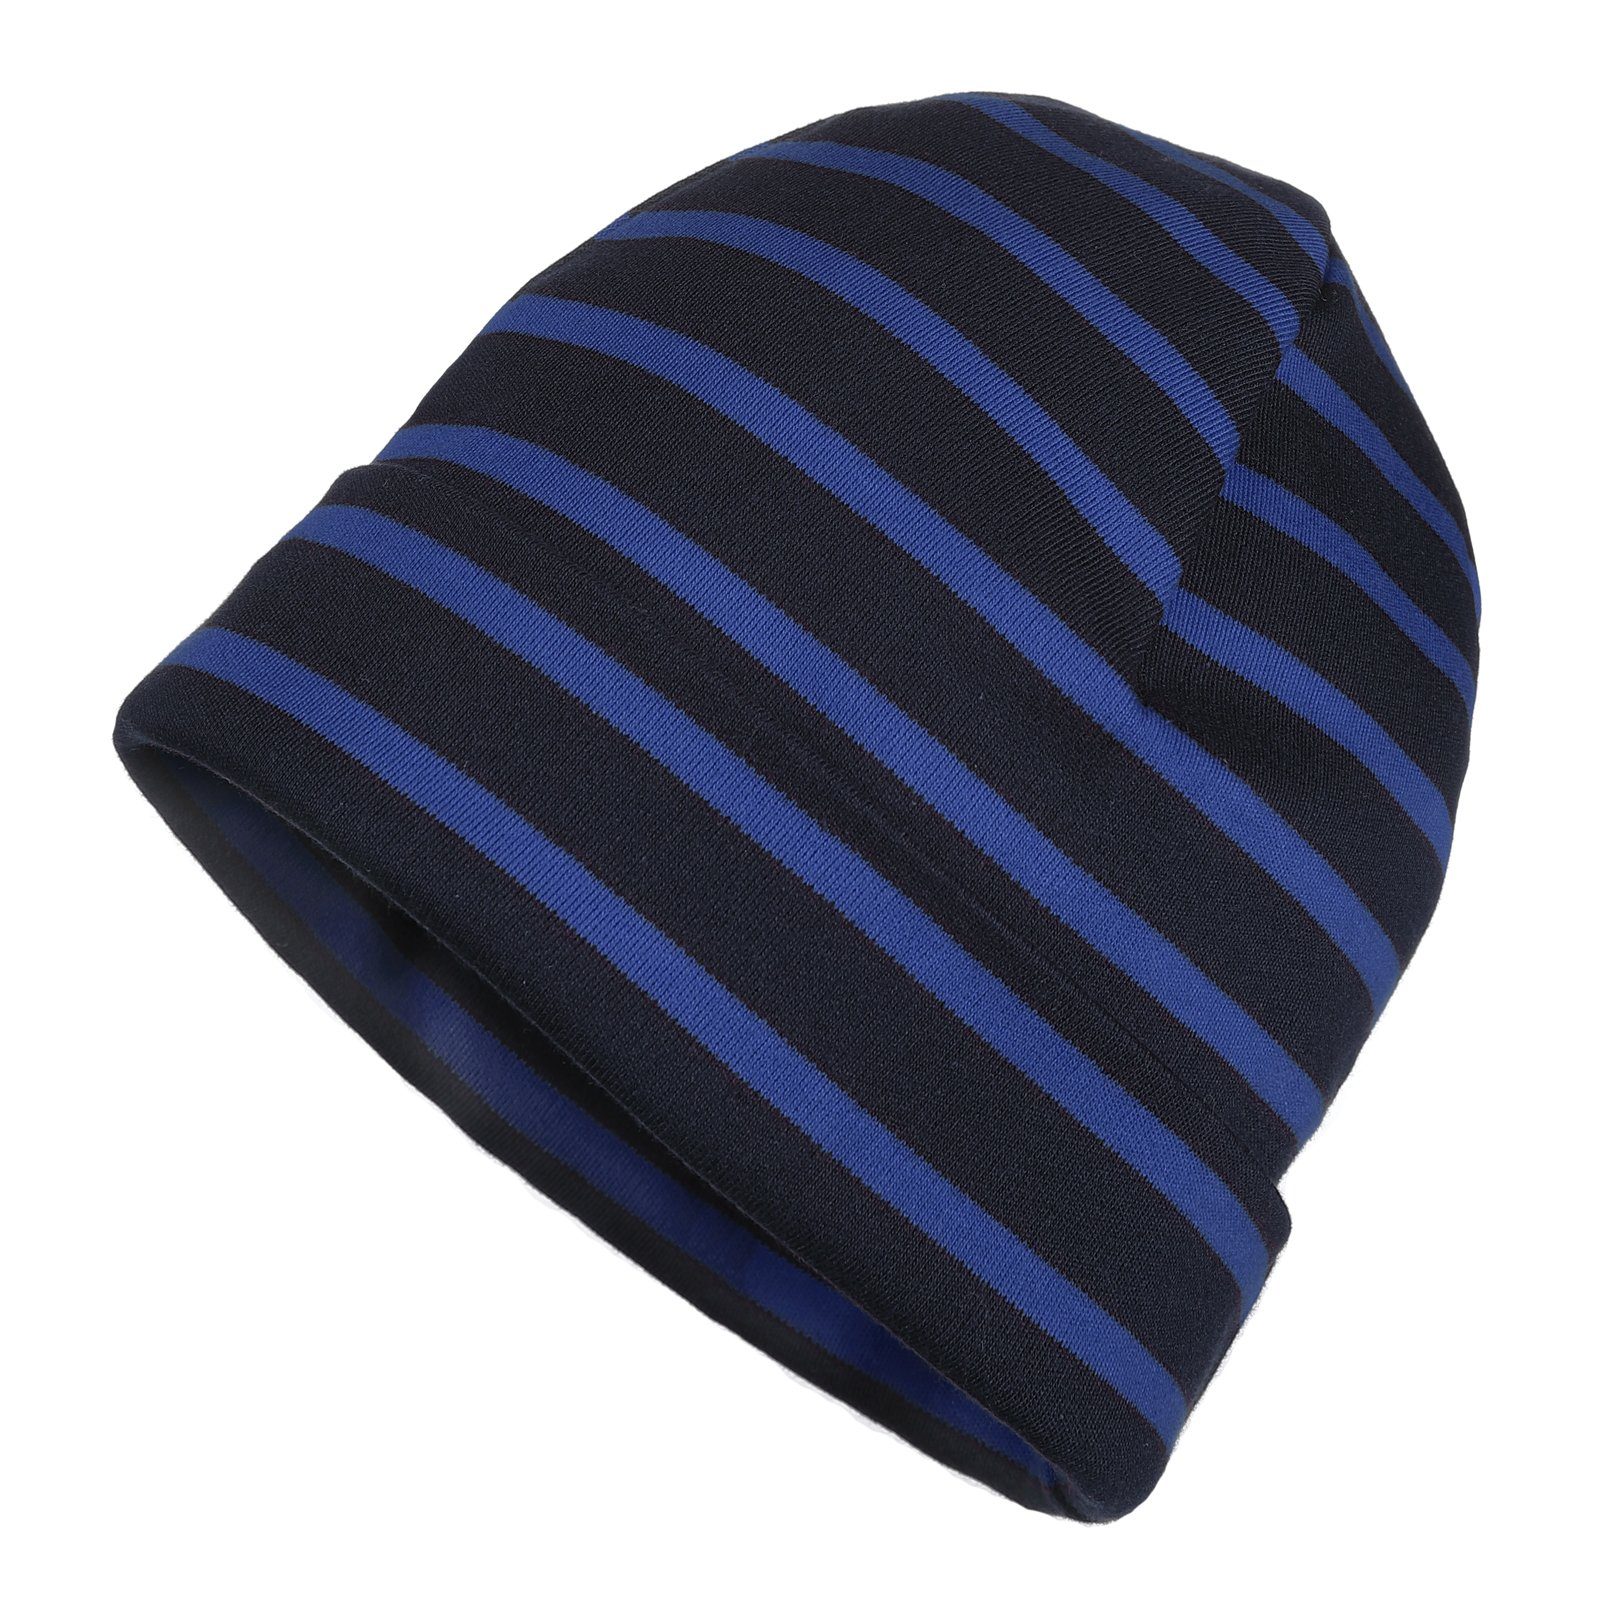 modAS Strickmütze Unisex Mütze Streifen für Kinder & Erwachsene - Ringelmütze Baumwolle (76) blau / royal